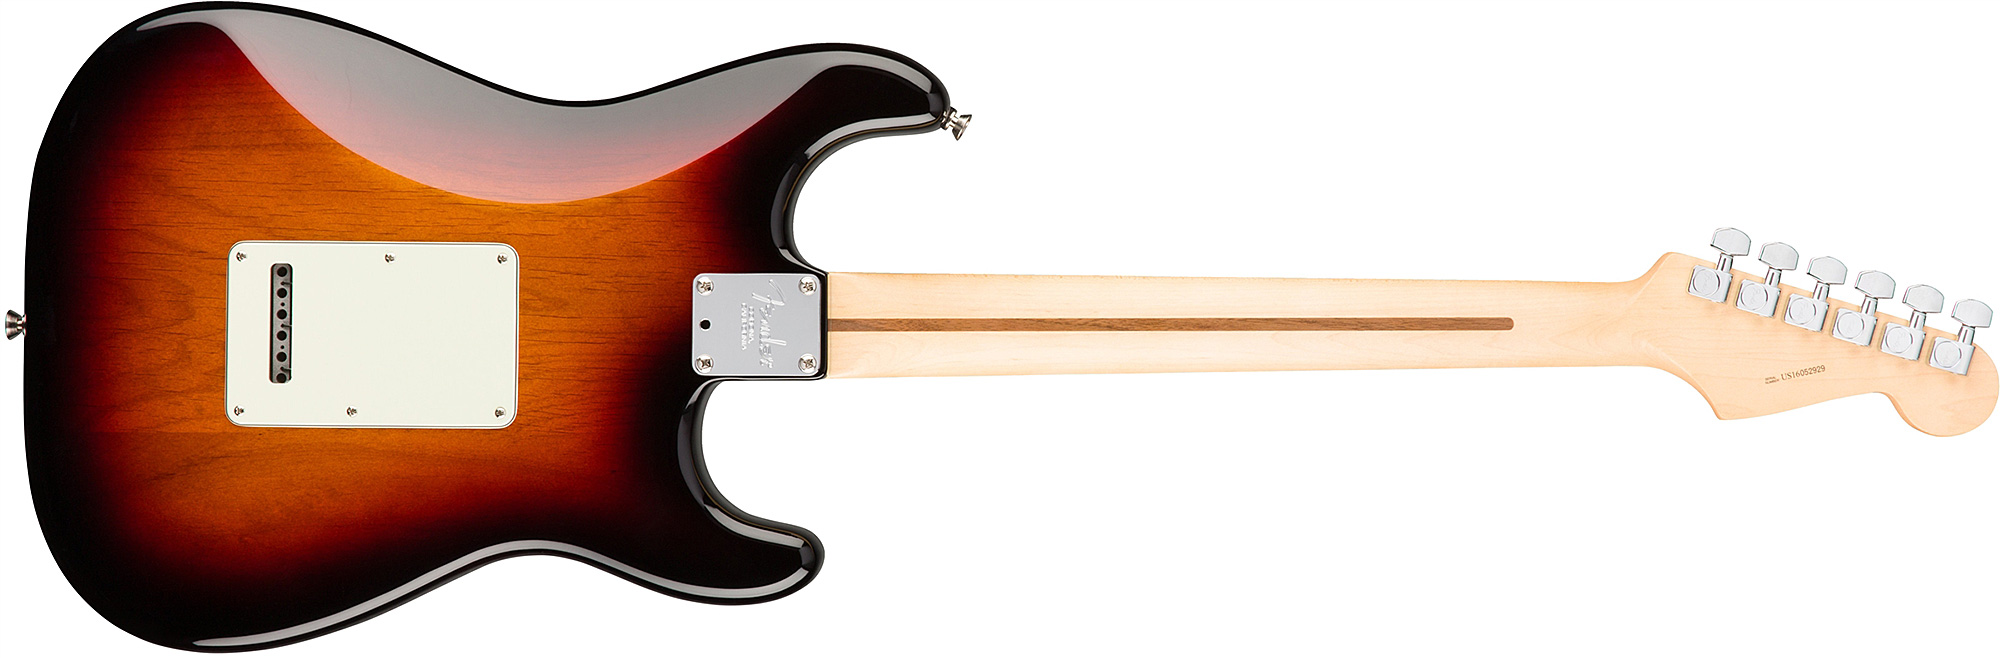 Fender Strat American Professional Lh Usa Gaucher 3s Rw - 3-color Sunburst - Linkshandige elektrische gitaar - Variation 1